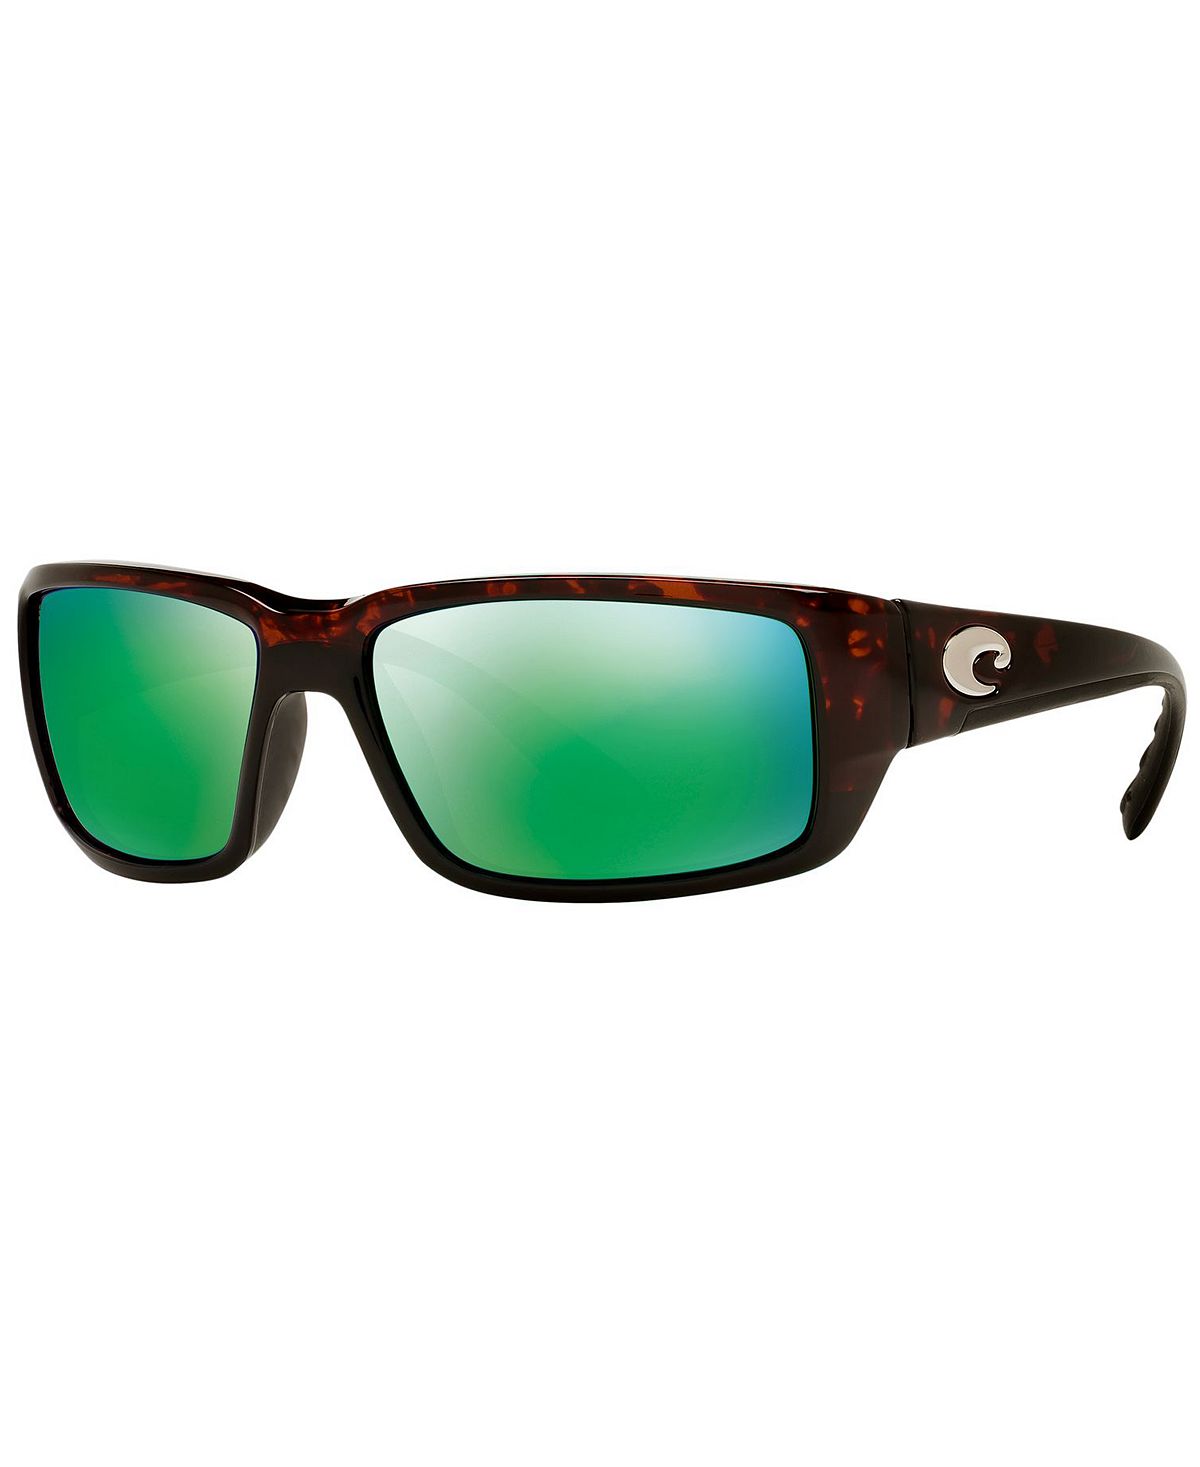 costa del mar permit 580 p tortoise green mirror Поляризованные солнцезащитные очки FANTAIL 59P Costa Del Mar